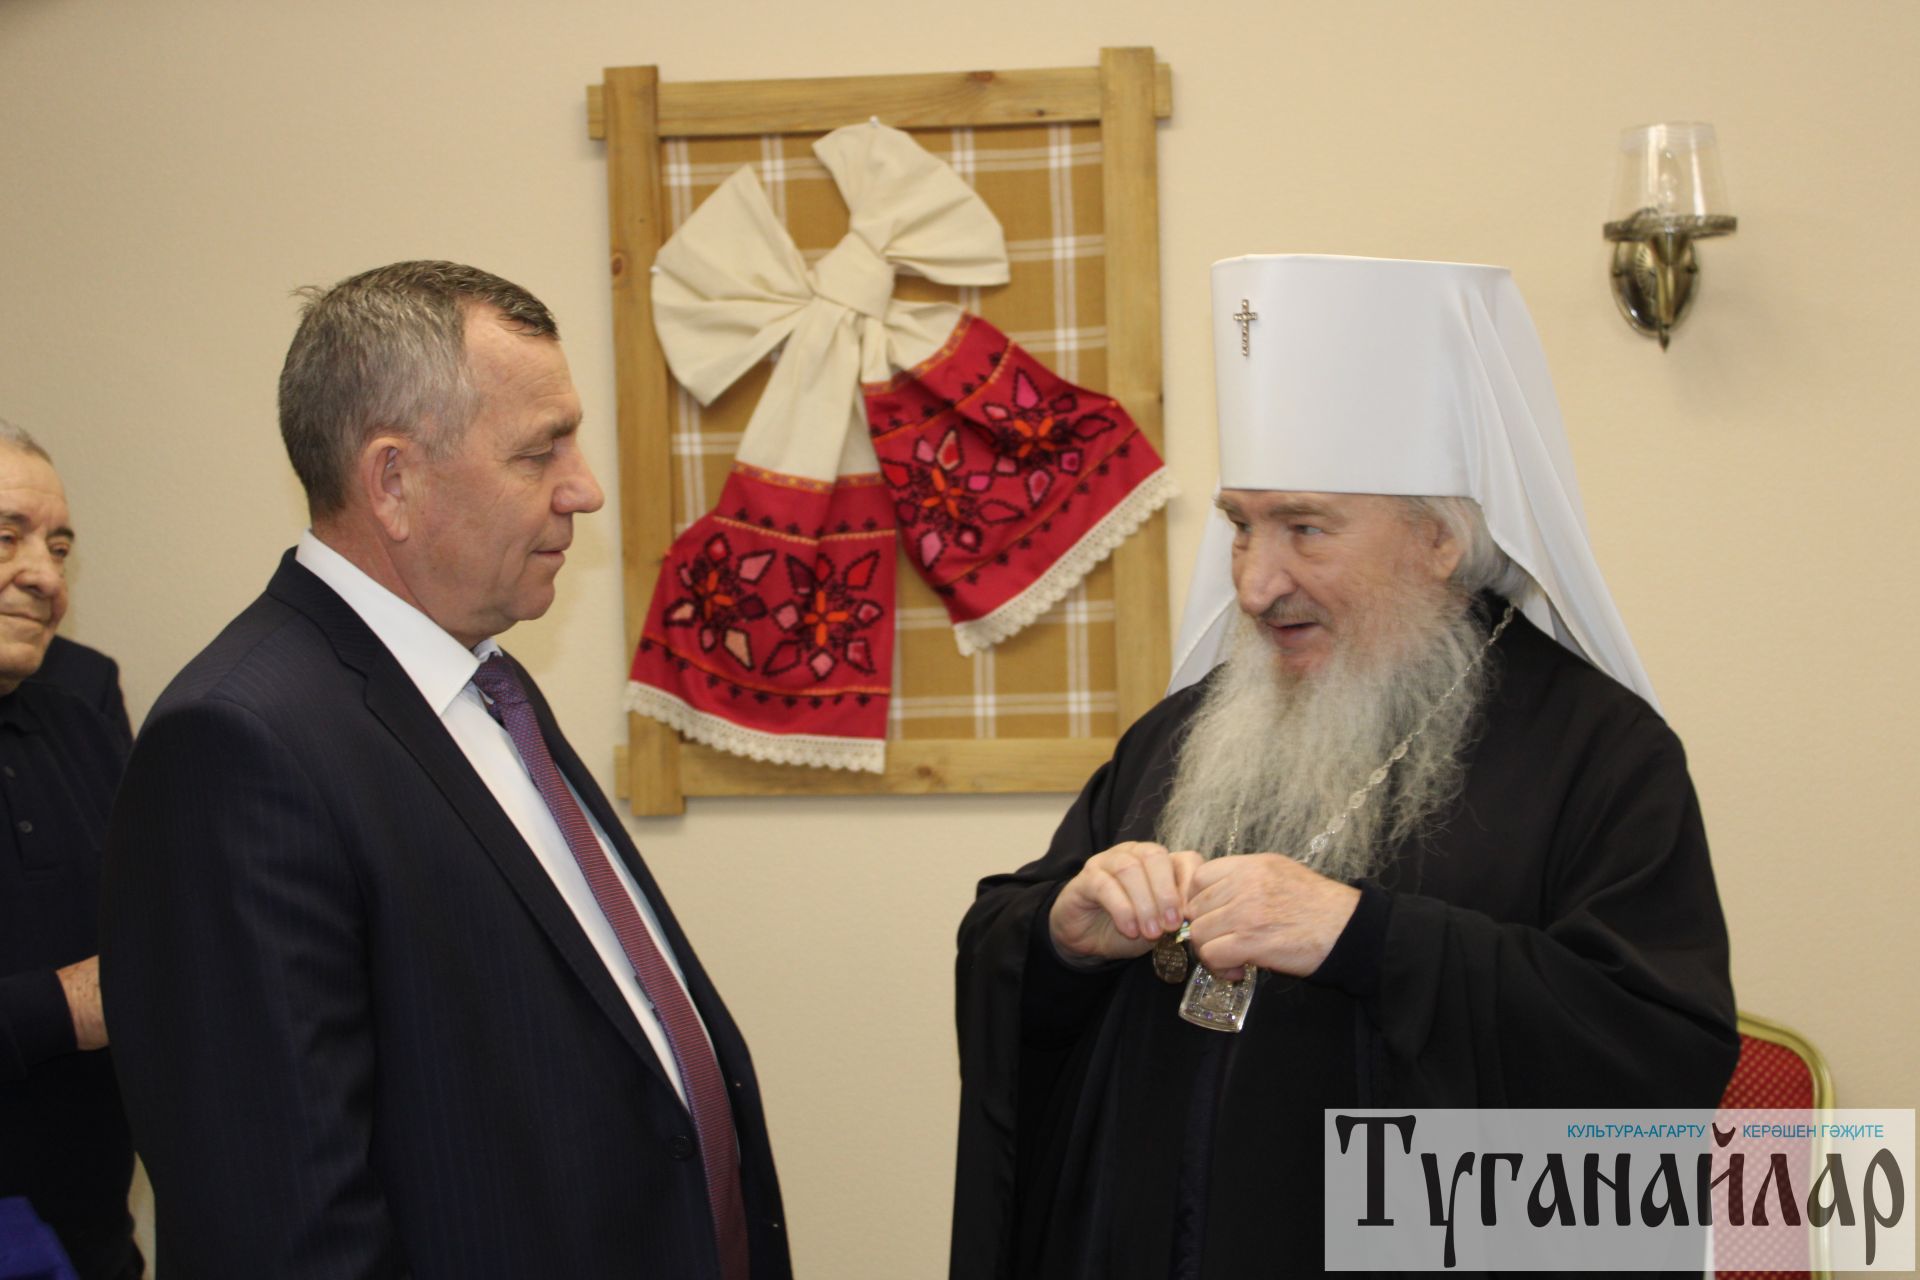 Иван Егоров встретился с митрополитом Феофаном